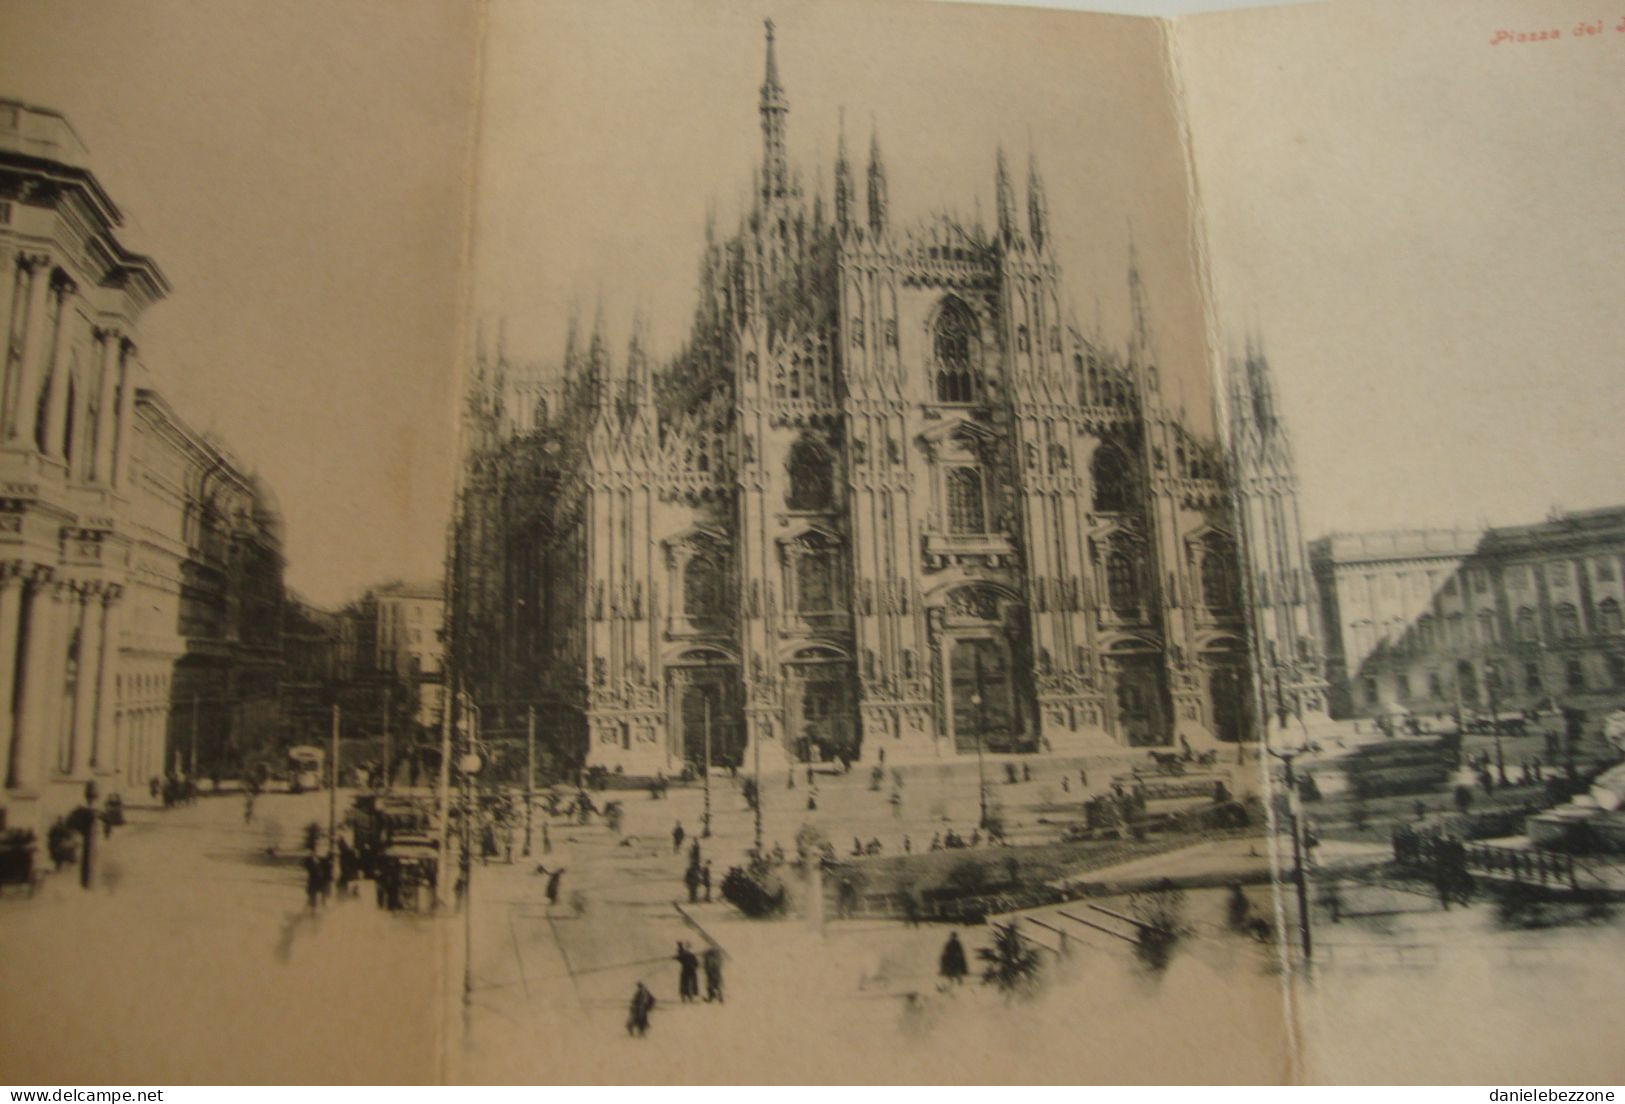 Cartolina D'epoca Tripla Milano Duomo E Piazza Del Duomo - Non Viaggiata - Milano (Milan)